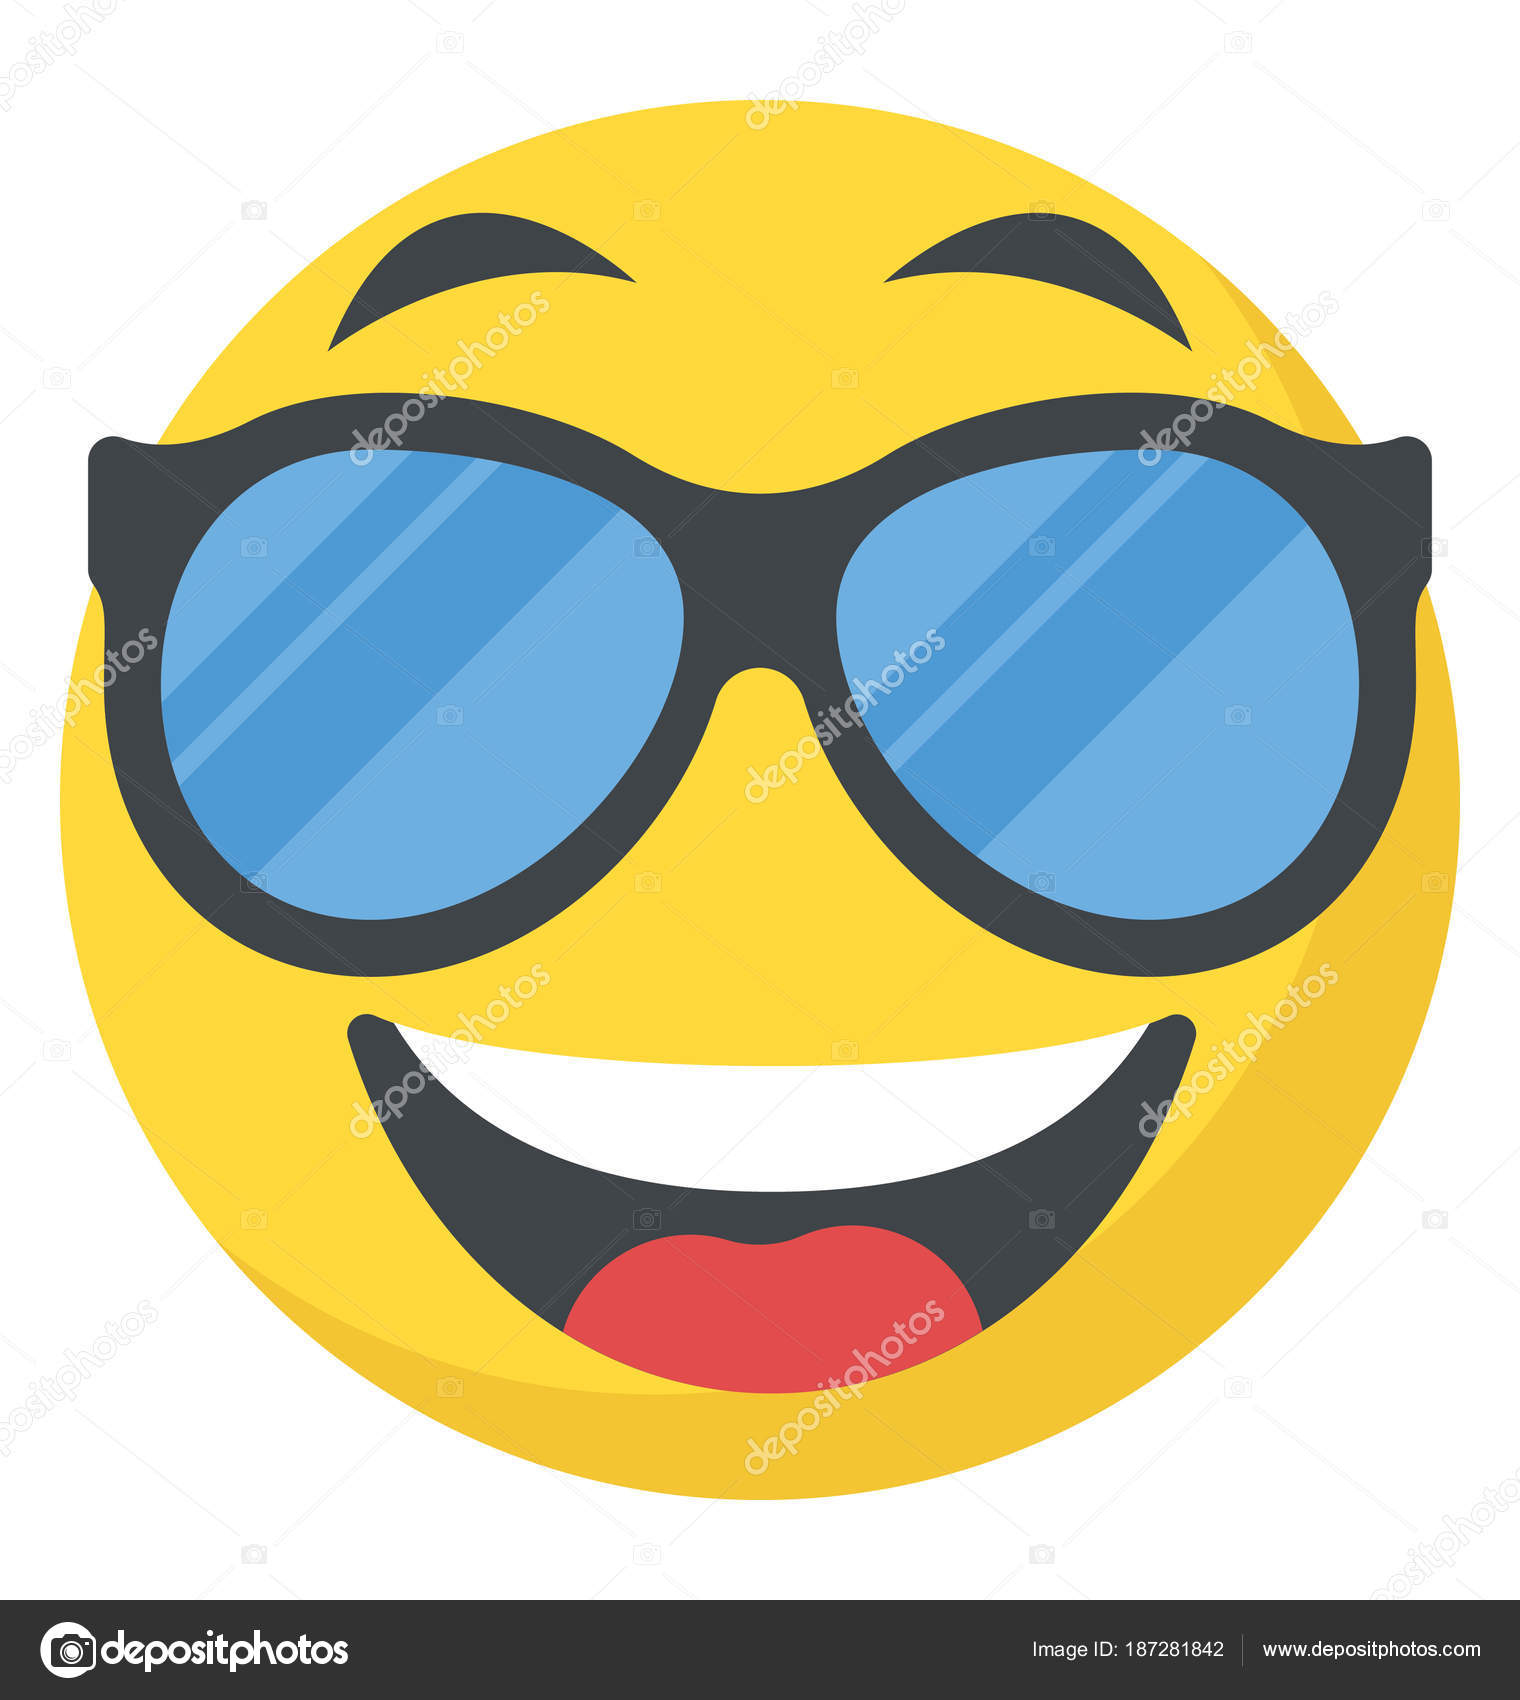  Cool  Smiley  Face Happy Emoji   Stock Vector  vectorspoint 